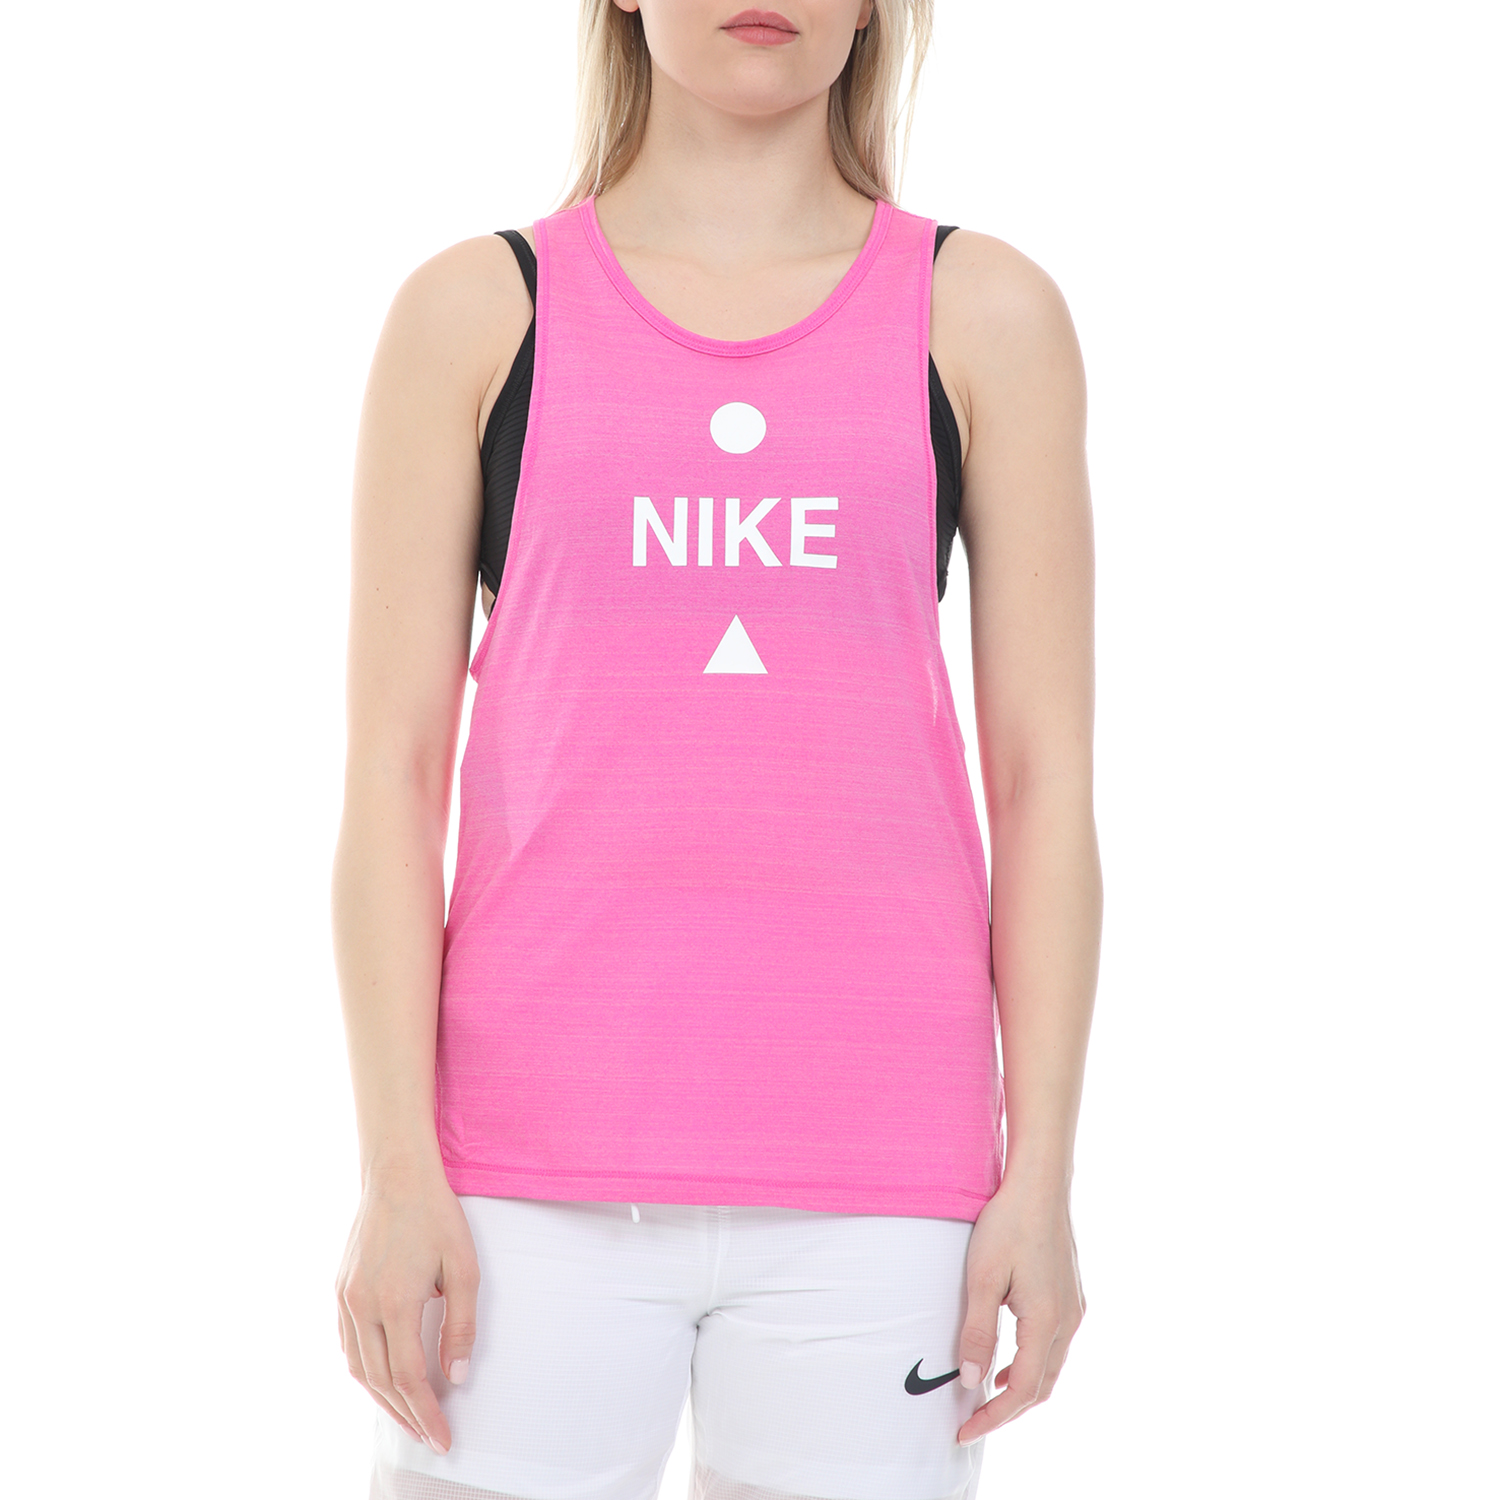 Γυναικεία/Ρούχα/Αθλητικά/T-shirt-Τοπ NIKE - Γυναικείο top NIKE ICNCLSH TANK BETTER ροζ